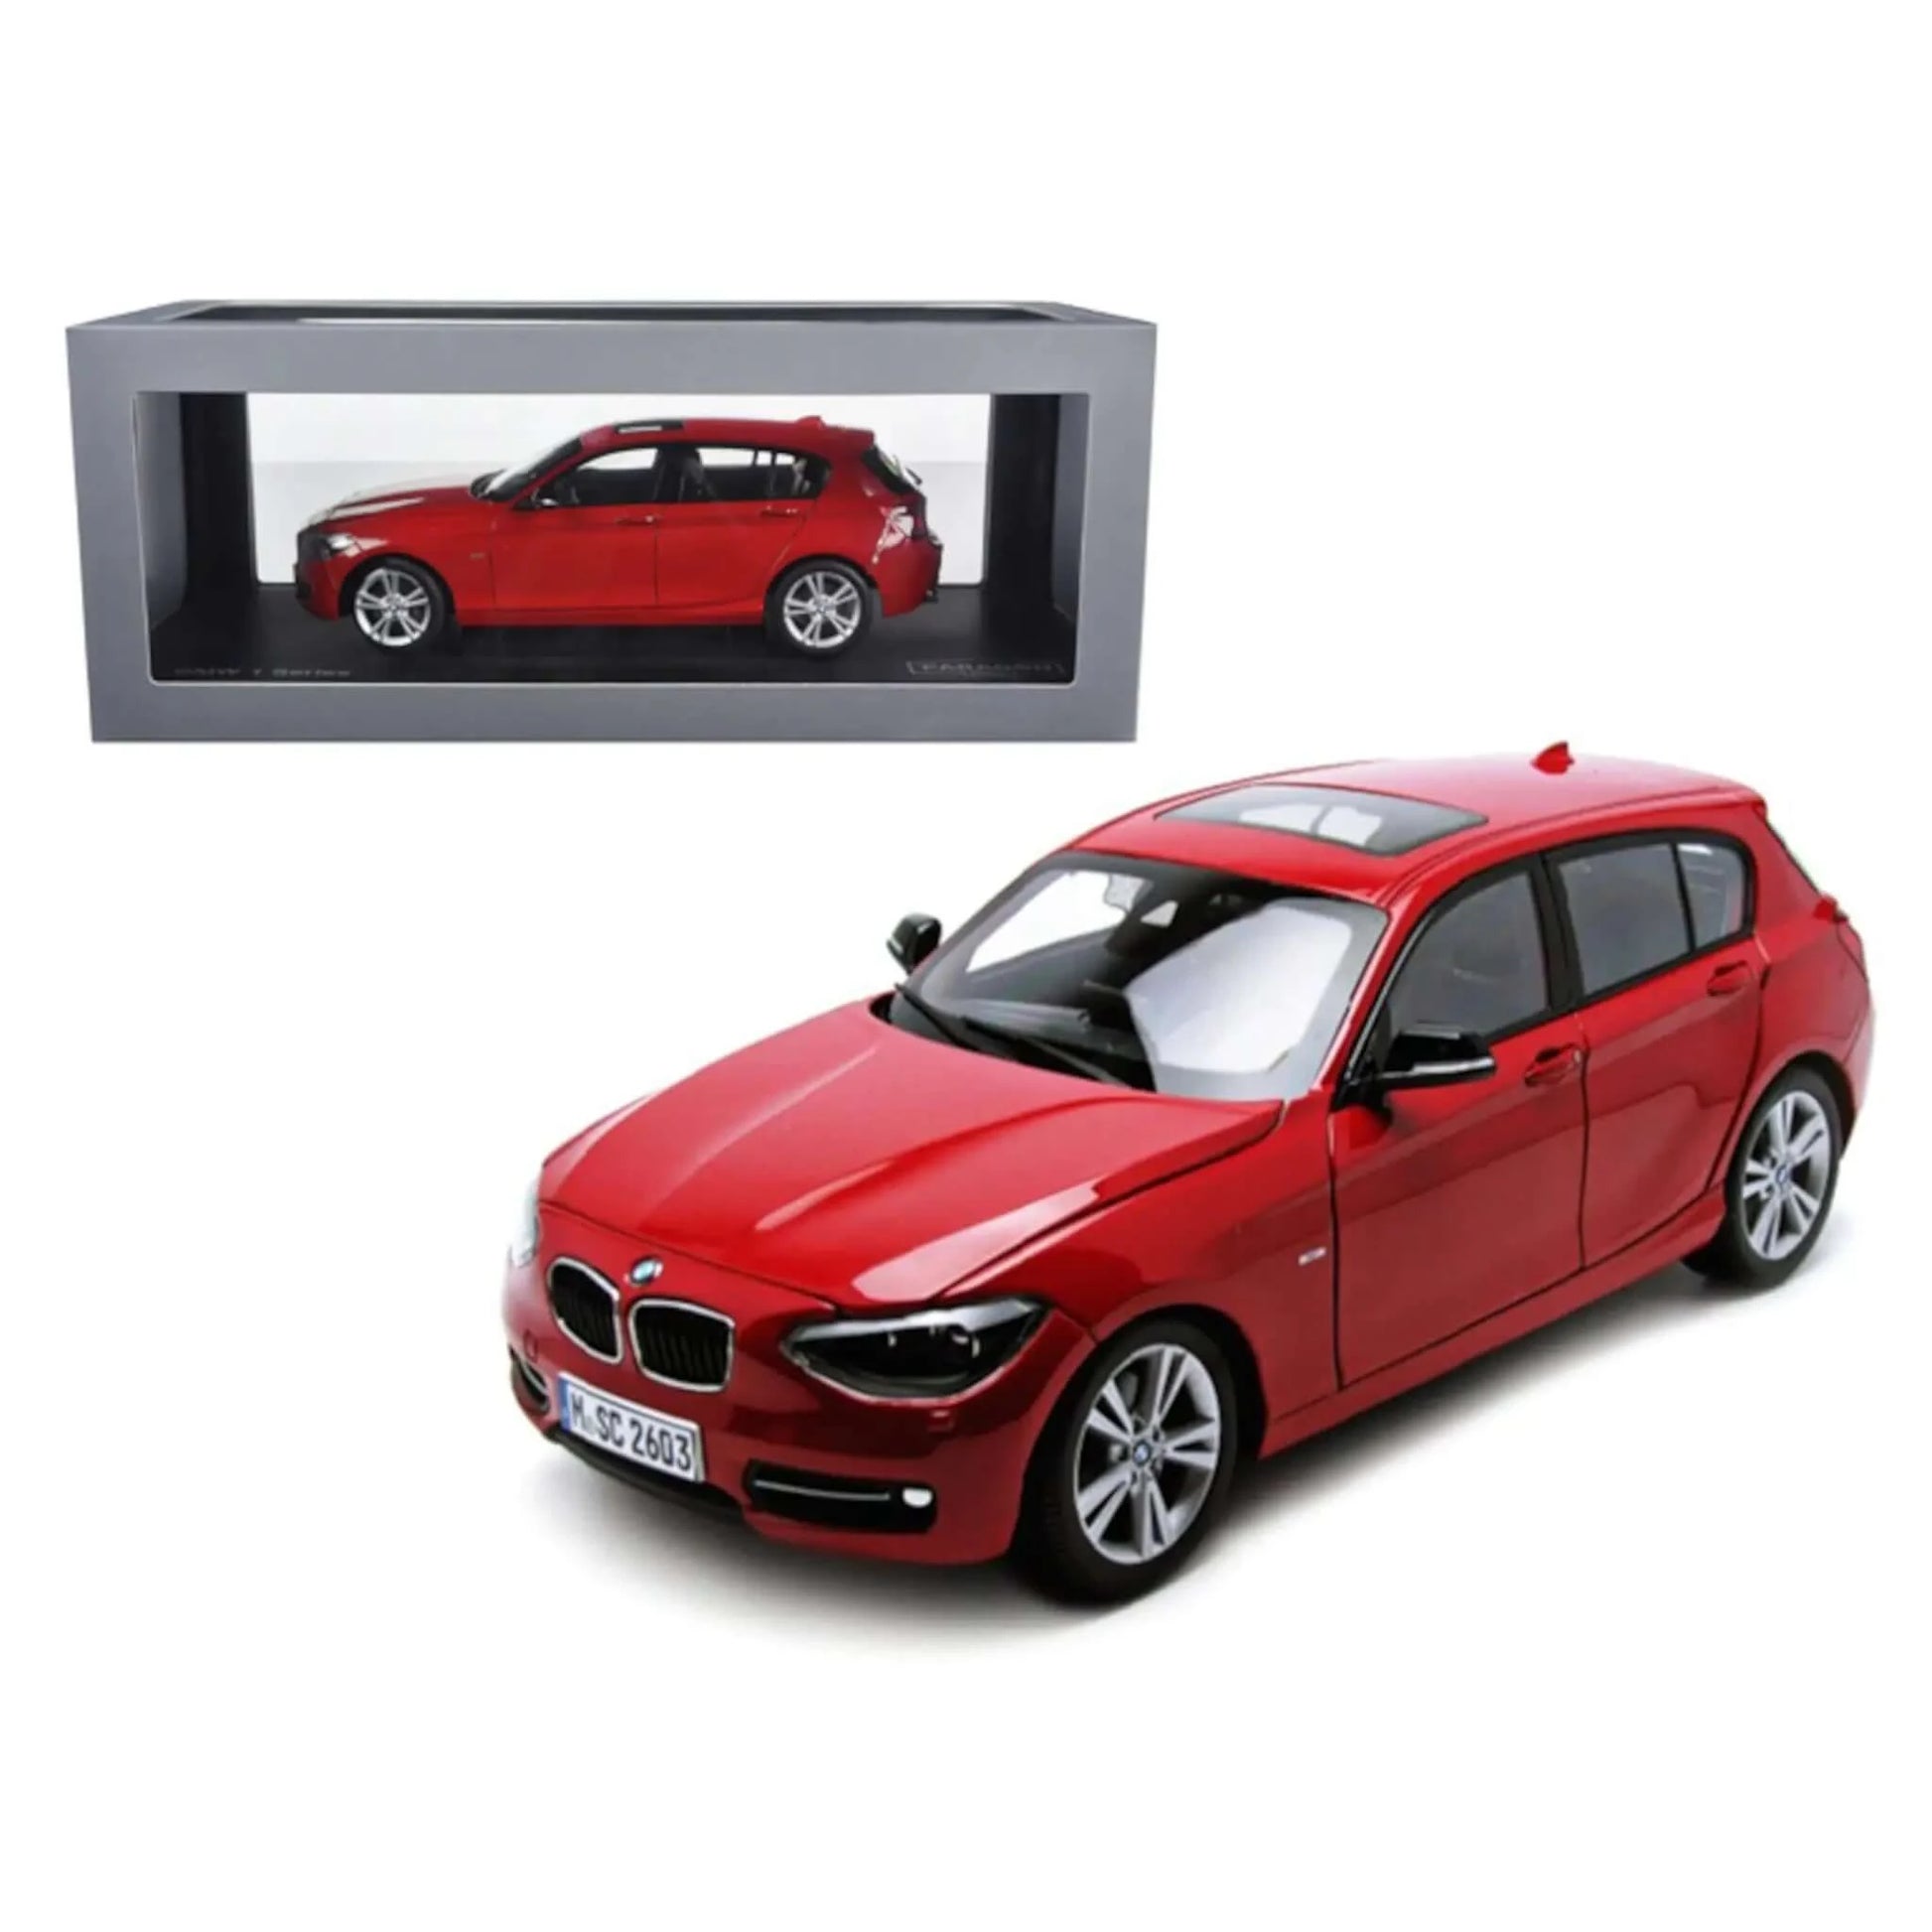 Voiture miniature BMW série 1 (F20) 2010 rouge Paragon 1/18 | Motors Miniatures